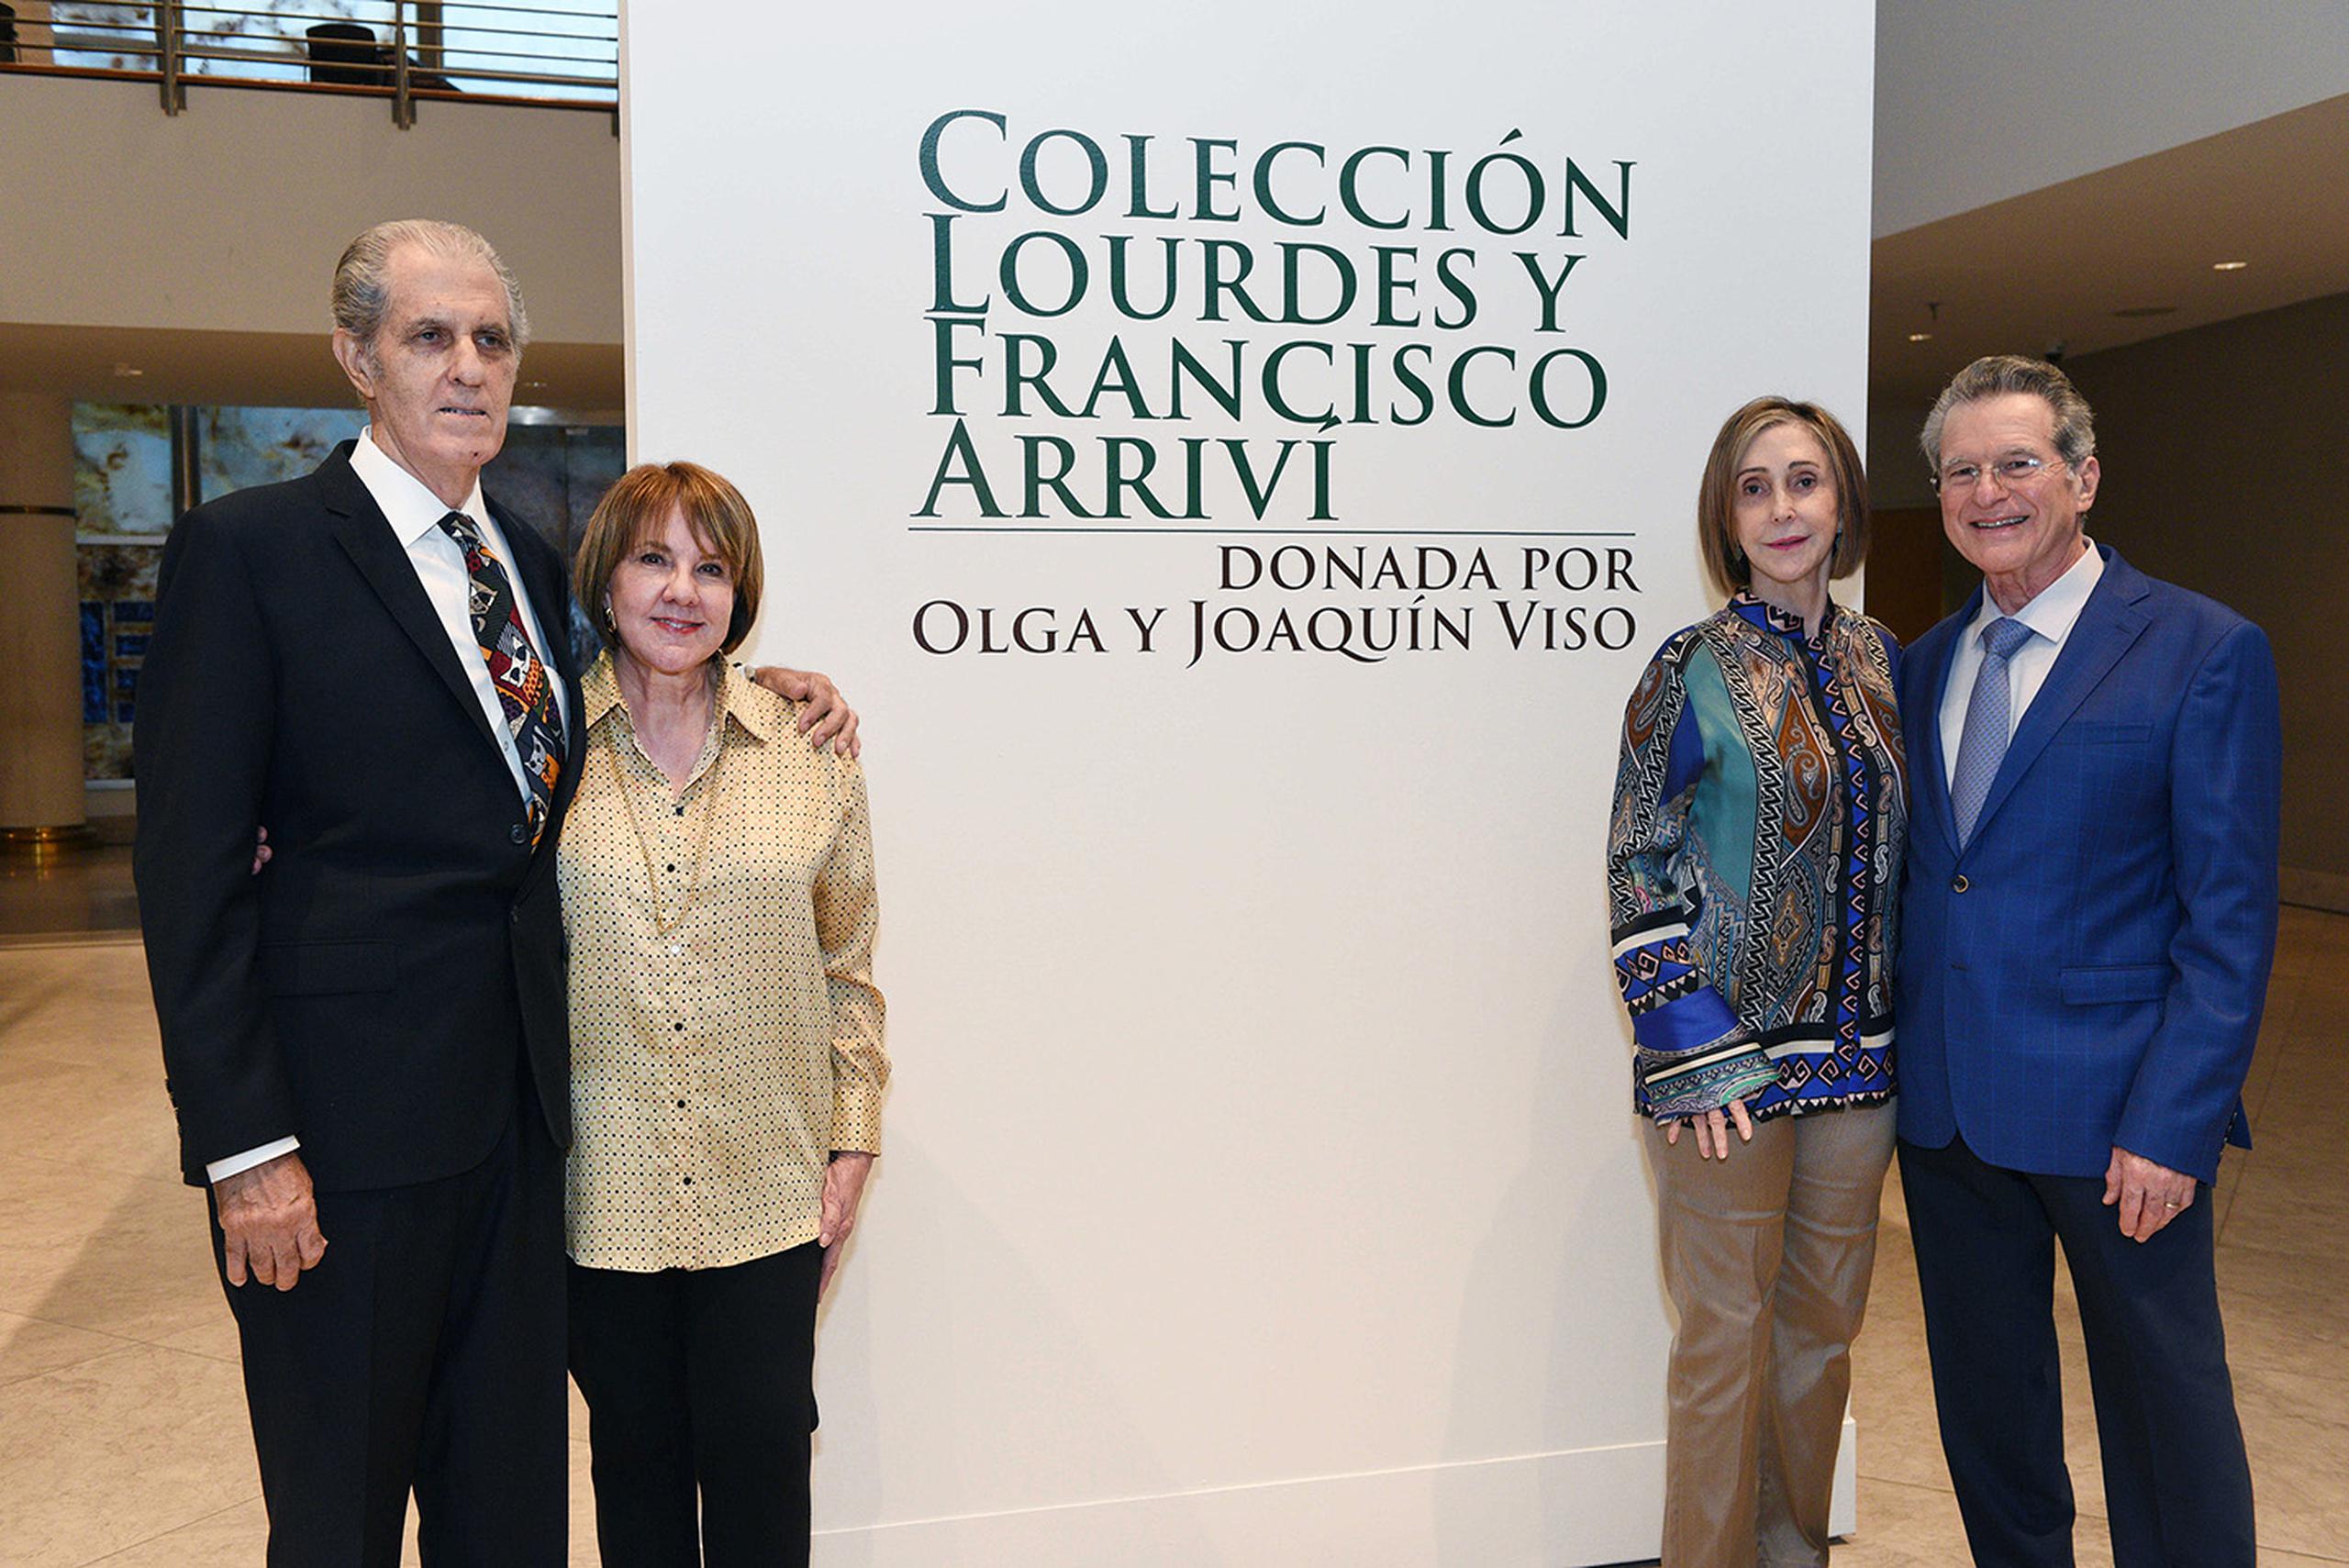 Lourdes y Francisco Arriví  y  Olga y Joaquín Viso, durante la donación de la colecciónde obras de arte al MAPR.